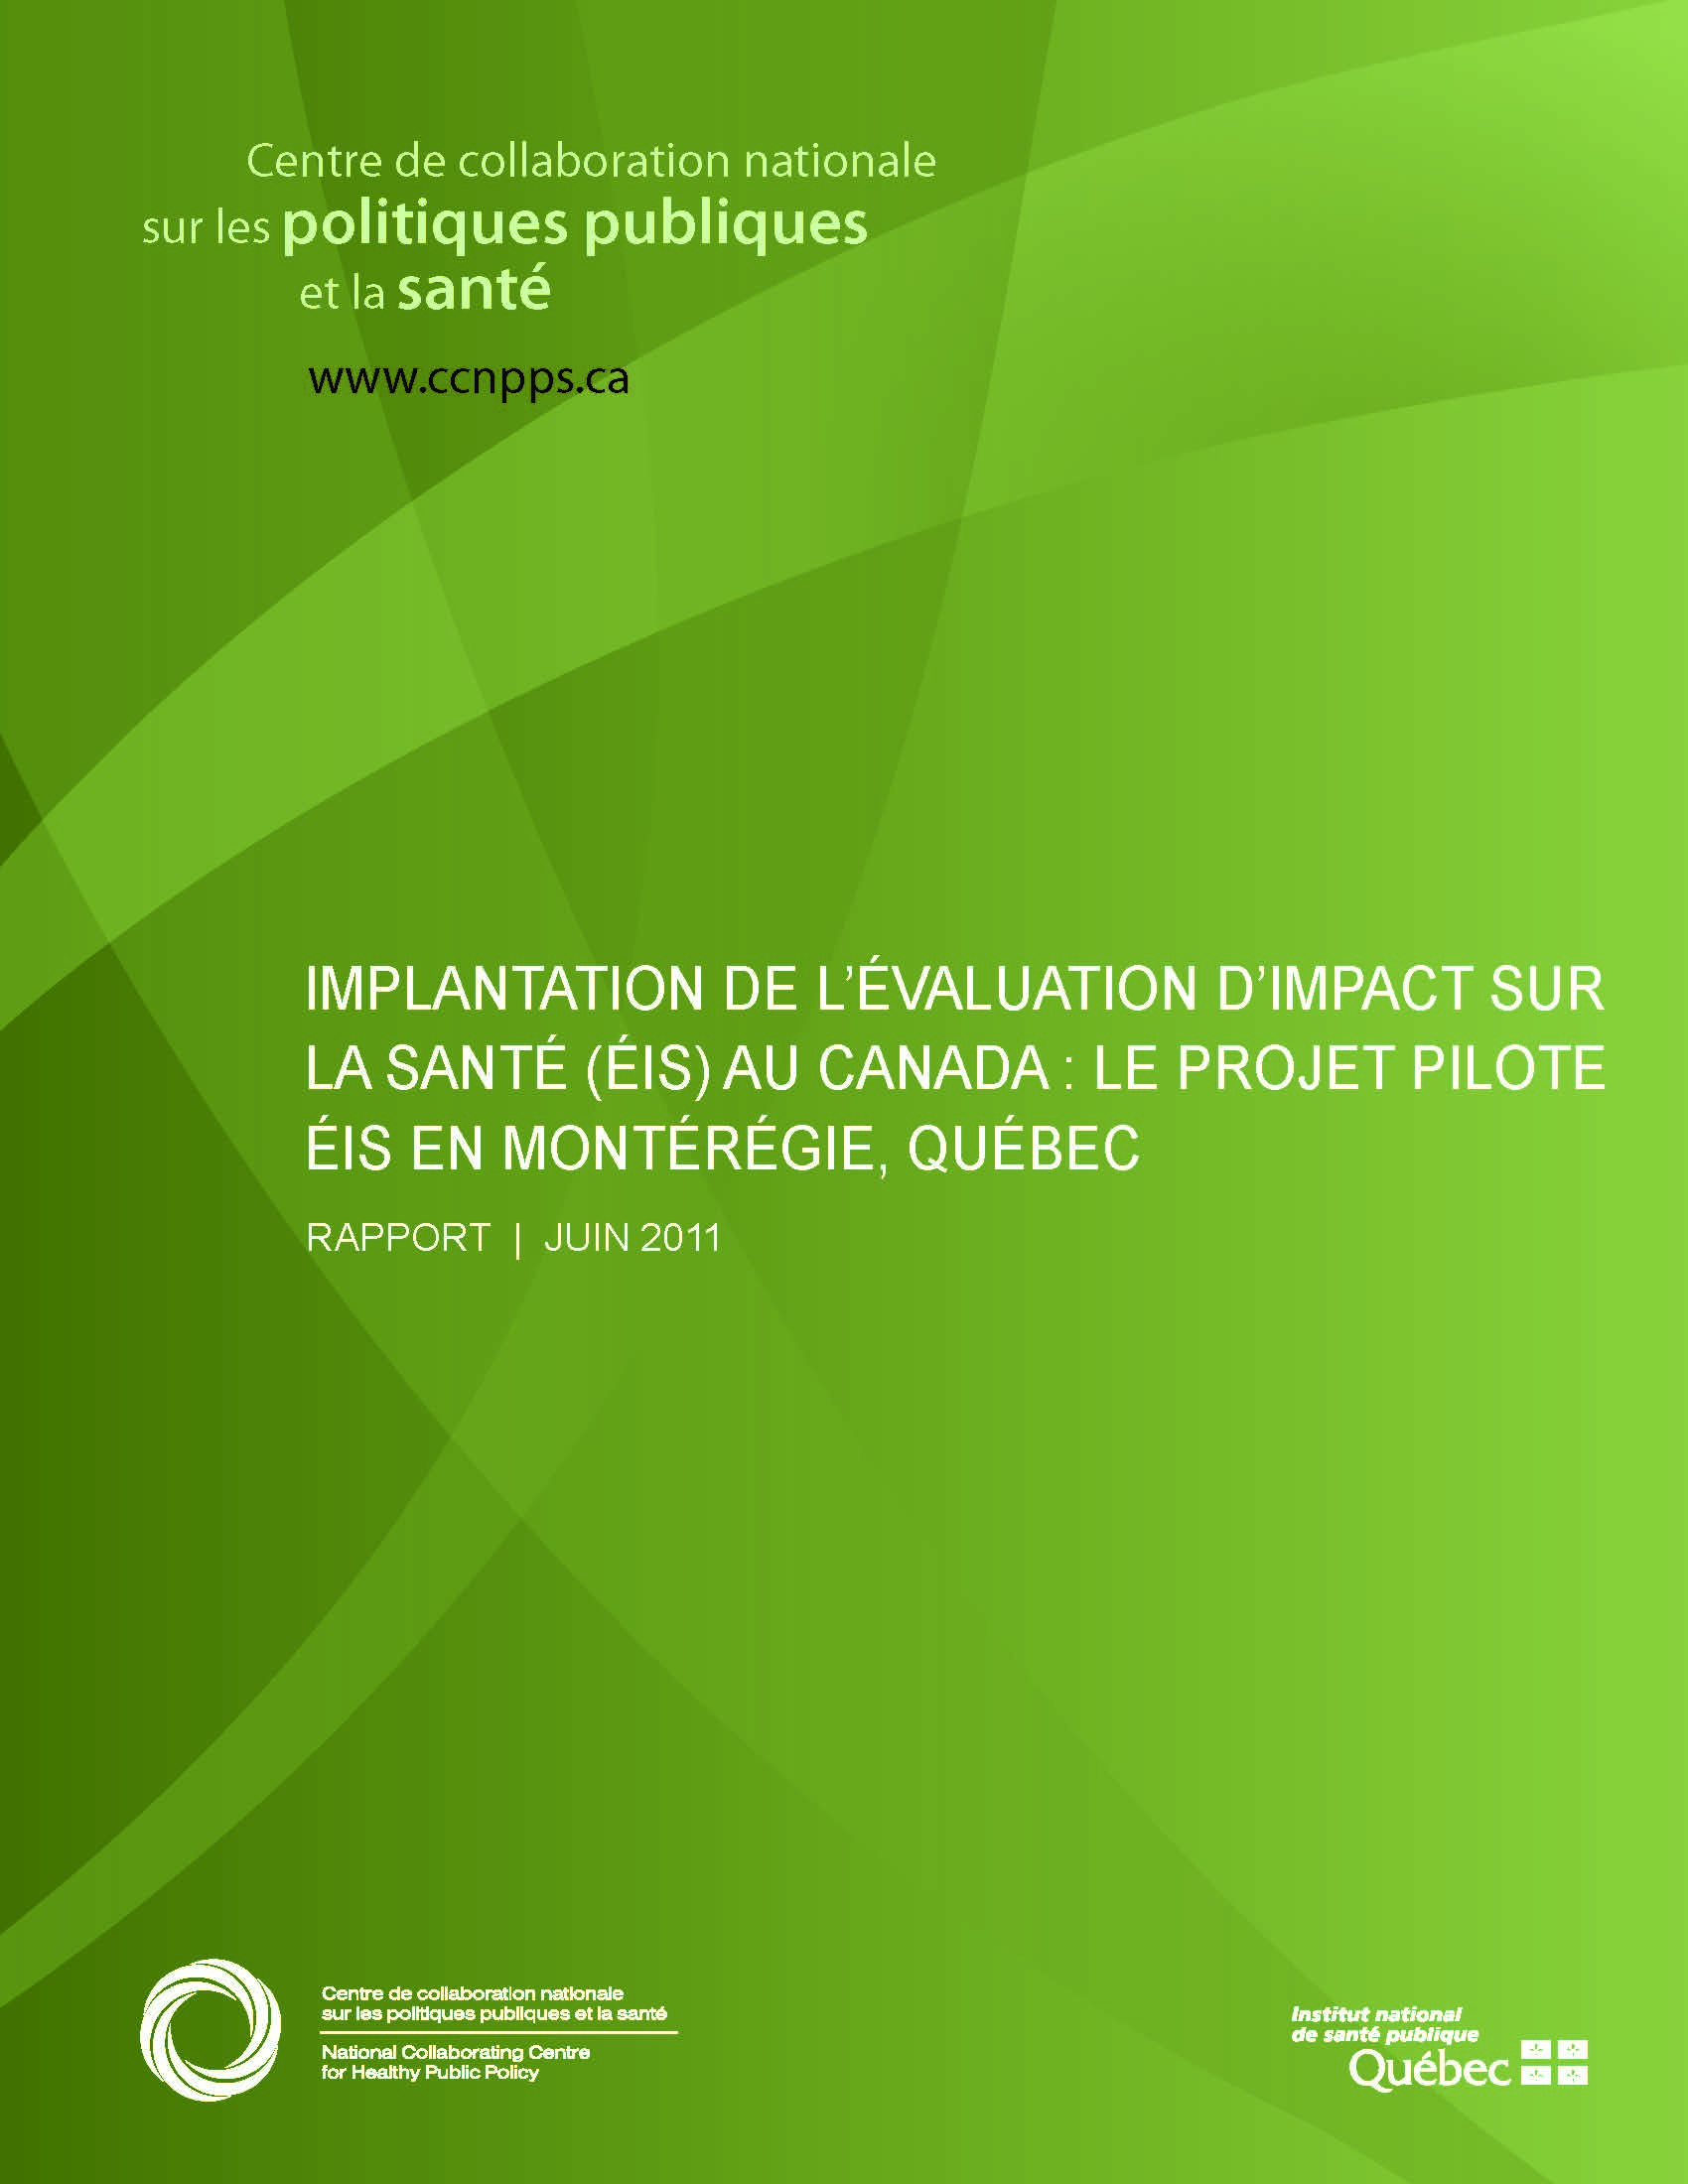 L’implantation de l’ÉIS au Canada : le projet pilote ÉIS en Montérégie, Québec